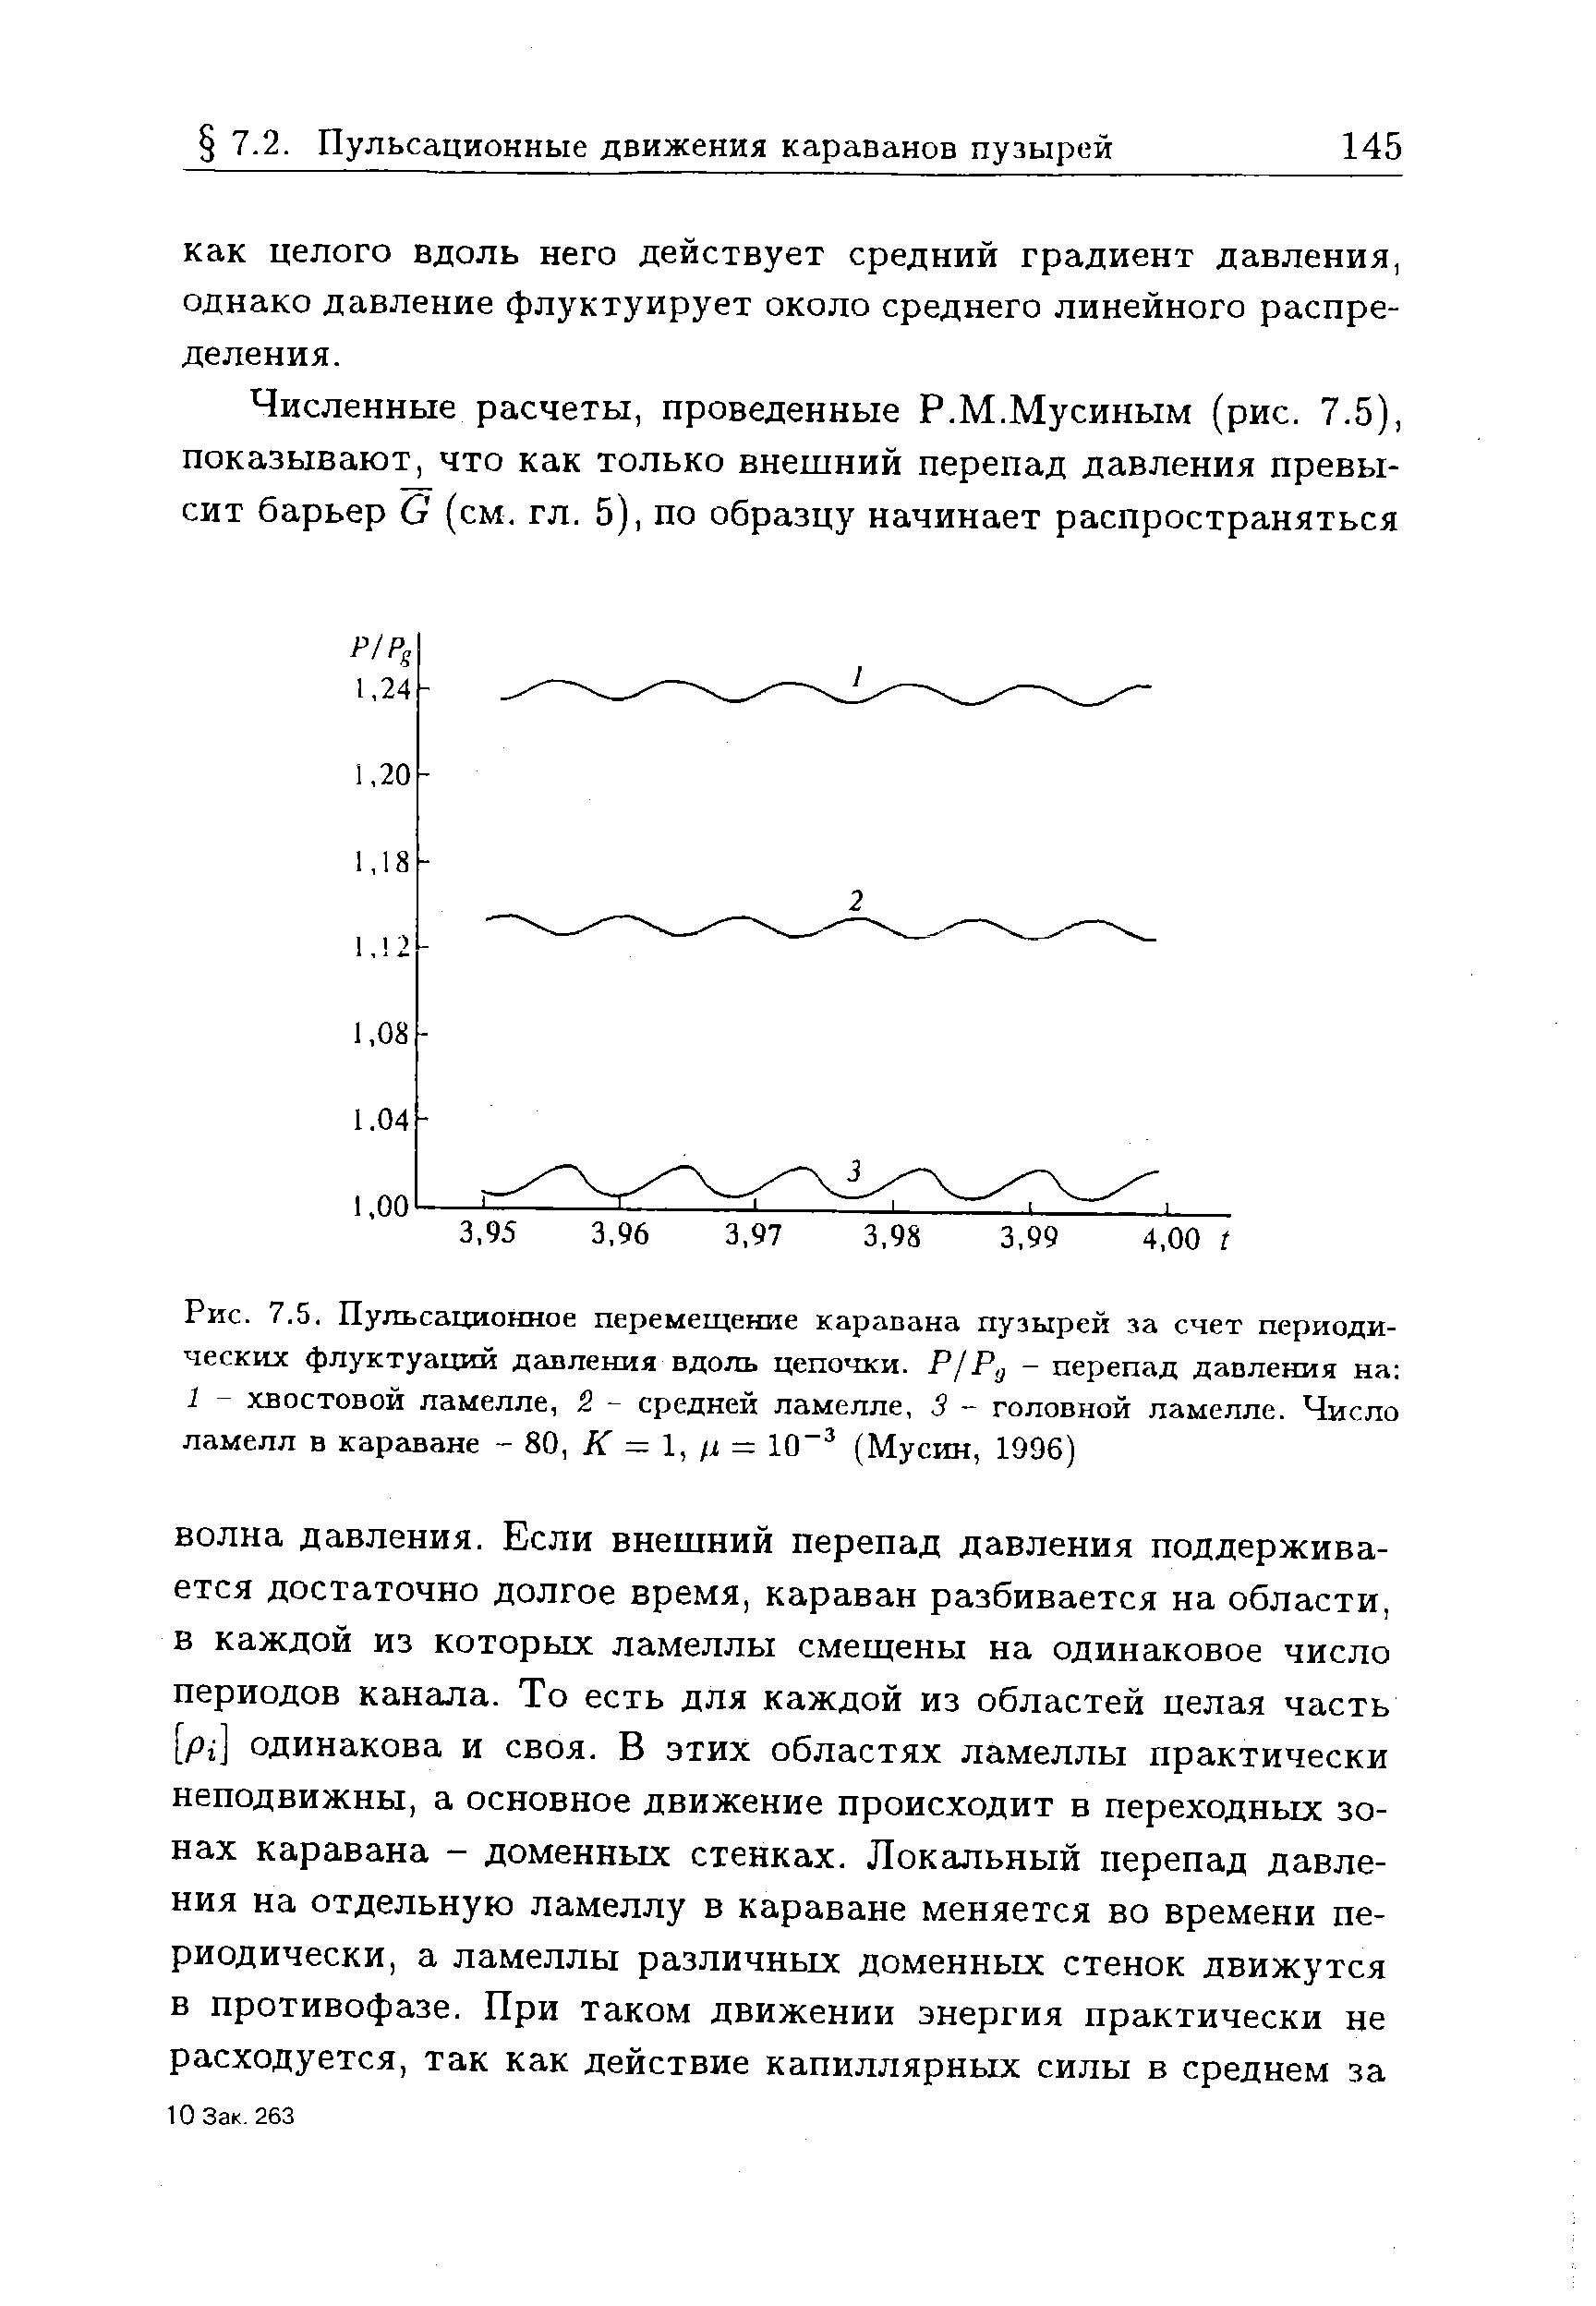 Рис. 7.5. Пульсационное перемещение каравана пузырей за счет периодических флуктуаций давления вдоль цепочки. Р/Р - <a href="/info/131272">перепад давления</a> на 1 - хвостовой ламелле, 2 - средней ламелле, 3 - головной ламелле. Число ламелл в караване - 80, К = 1, ц = 10 (Мусин, 1996)
